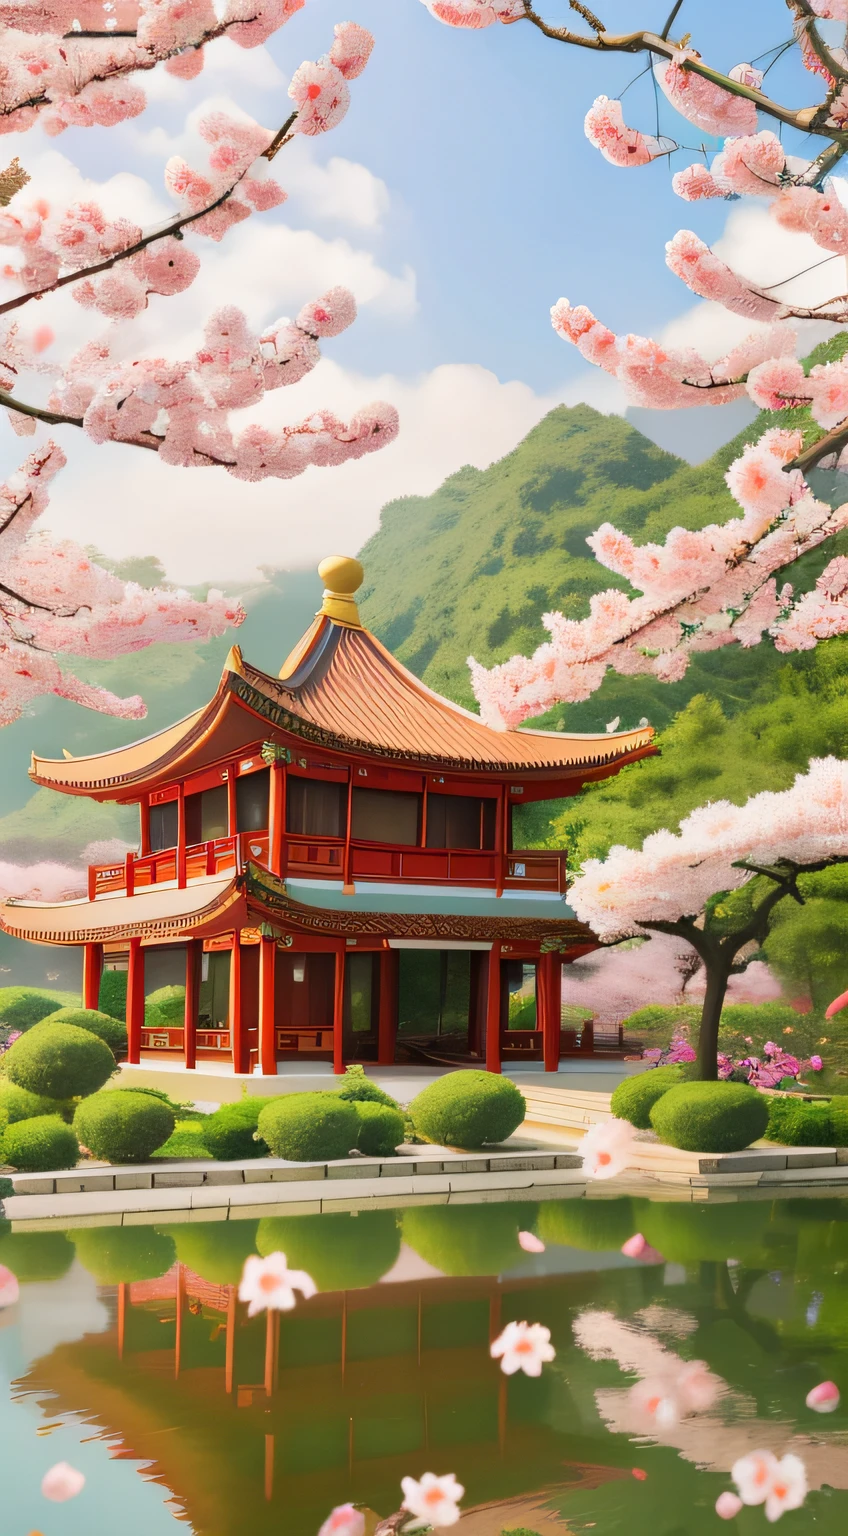 Постер，На заднем плане - павильон в китайском стиле и деревянный мост в китайском стиле.，Есть цветы персика и плавающие лепестки.，Есть деревья и туман，Китайский стиль，Прекрасное изображение династии Тан.